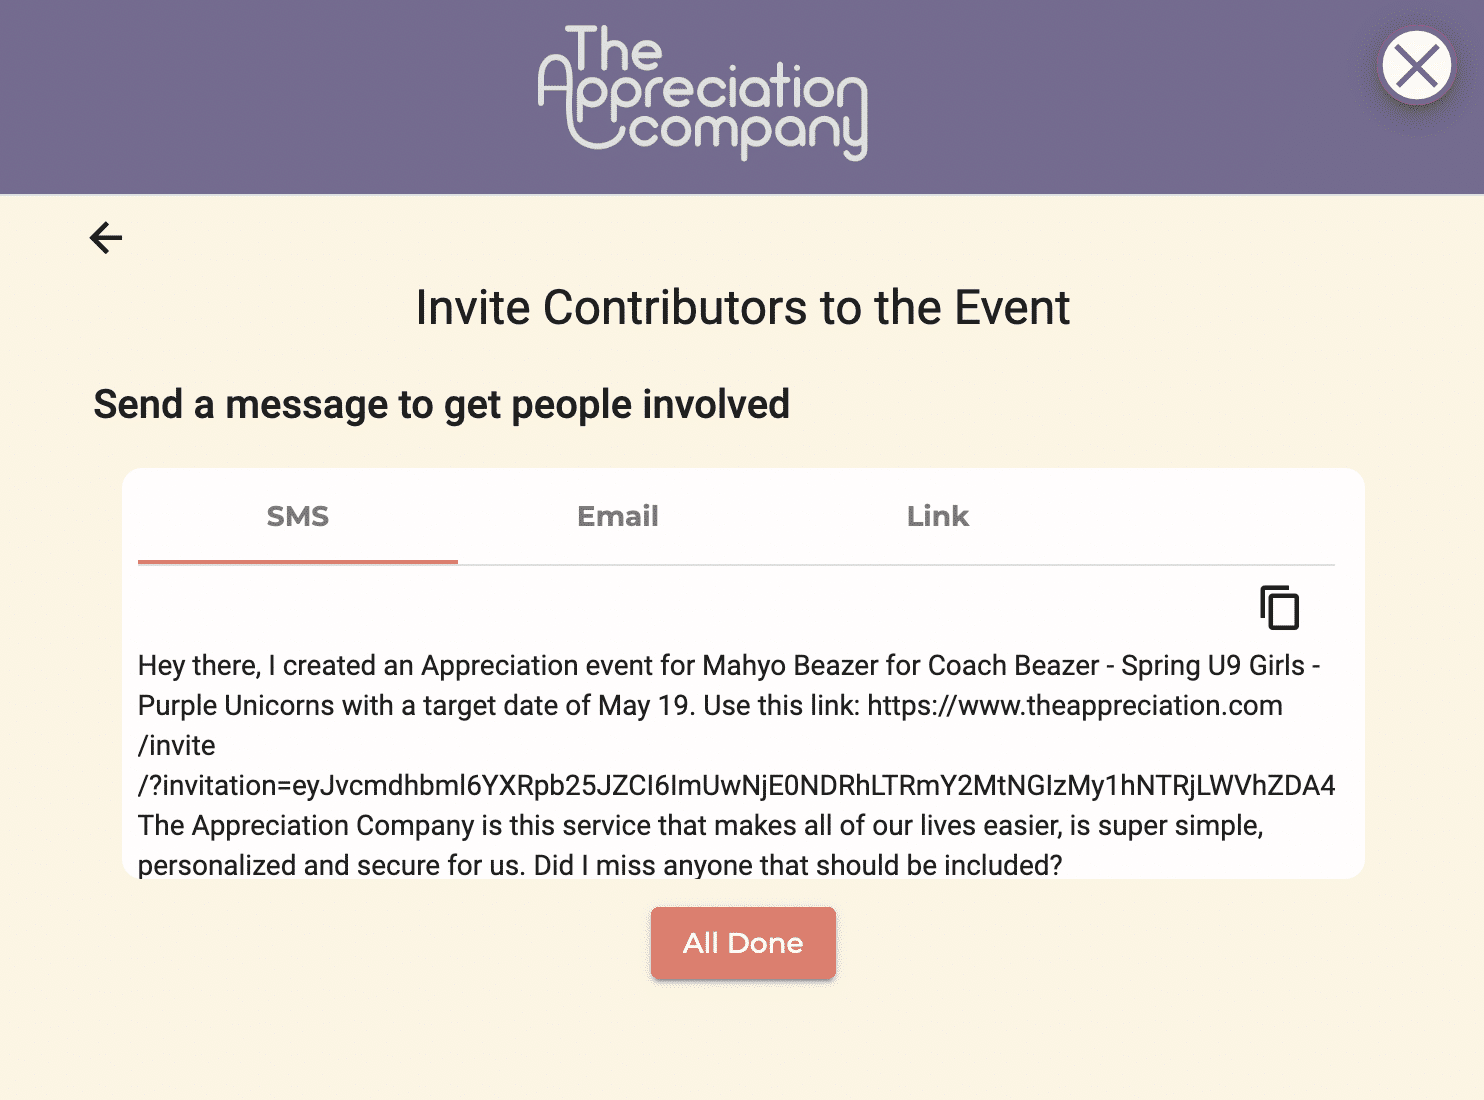 Invite contributors via SMS